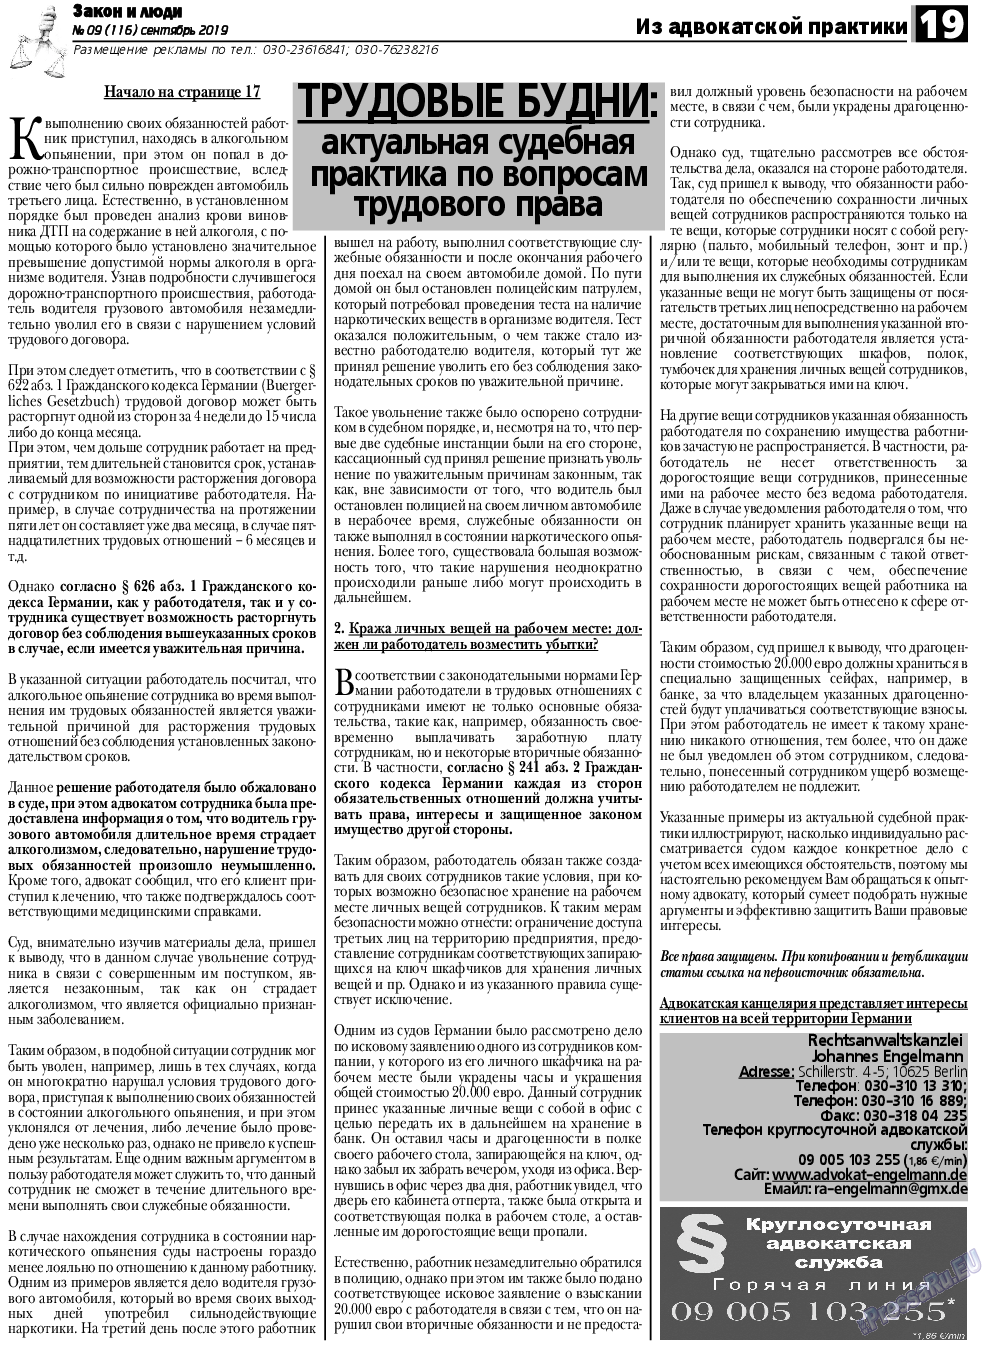 Закон и люди, газета. 2019 №9 стр.19